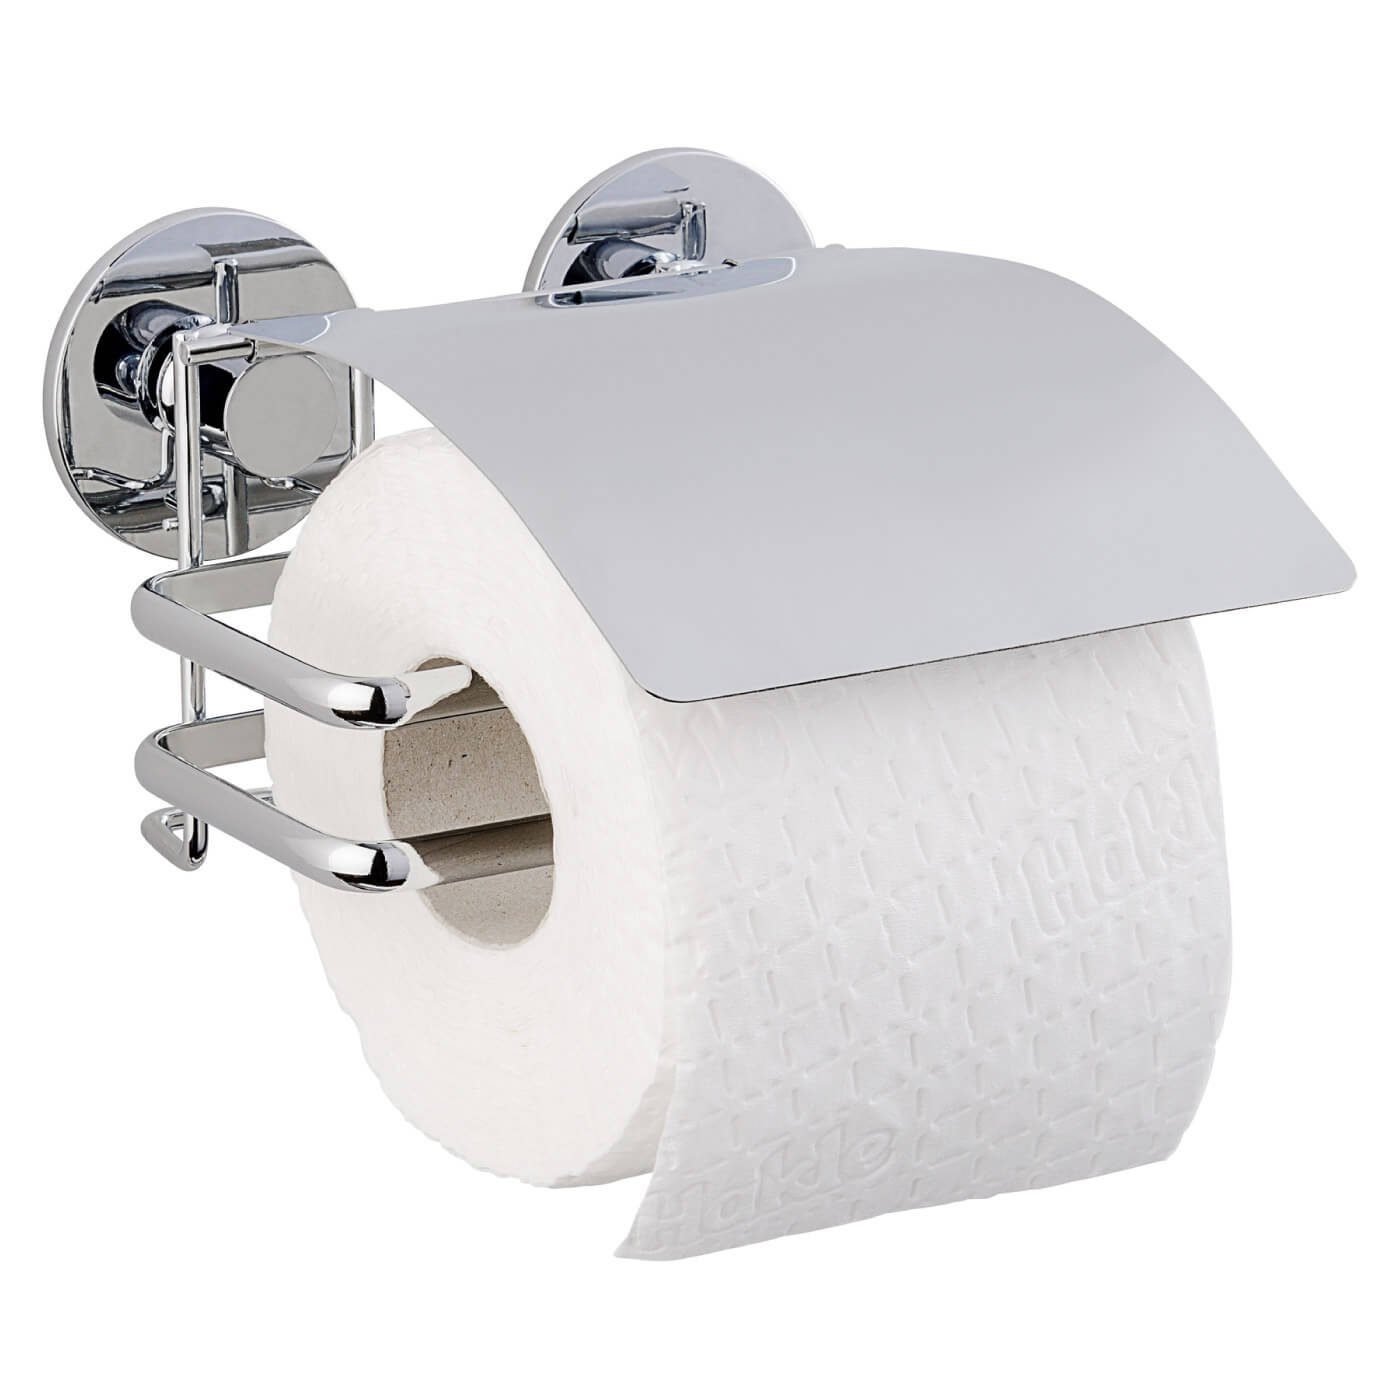 WENKO Toilettenpapierhalter Toiletten Papier Rollen Deckel Wand Halter Edelstahl ohne Bohren